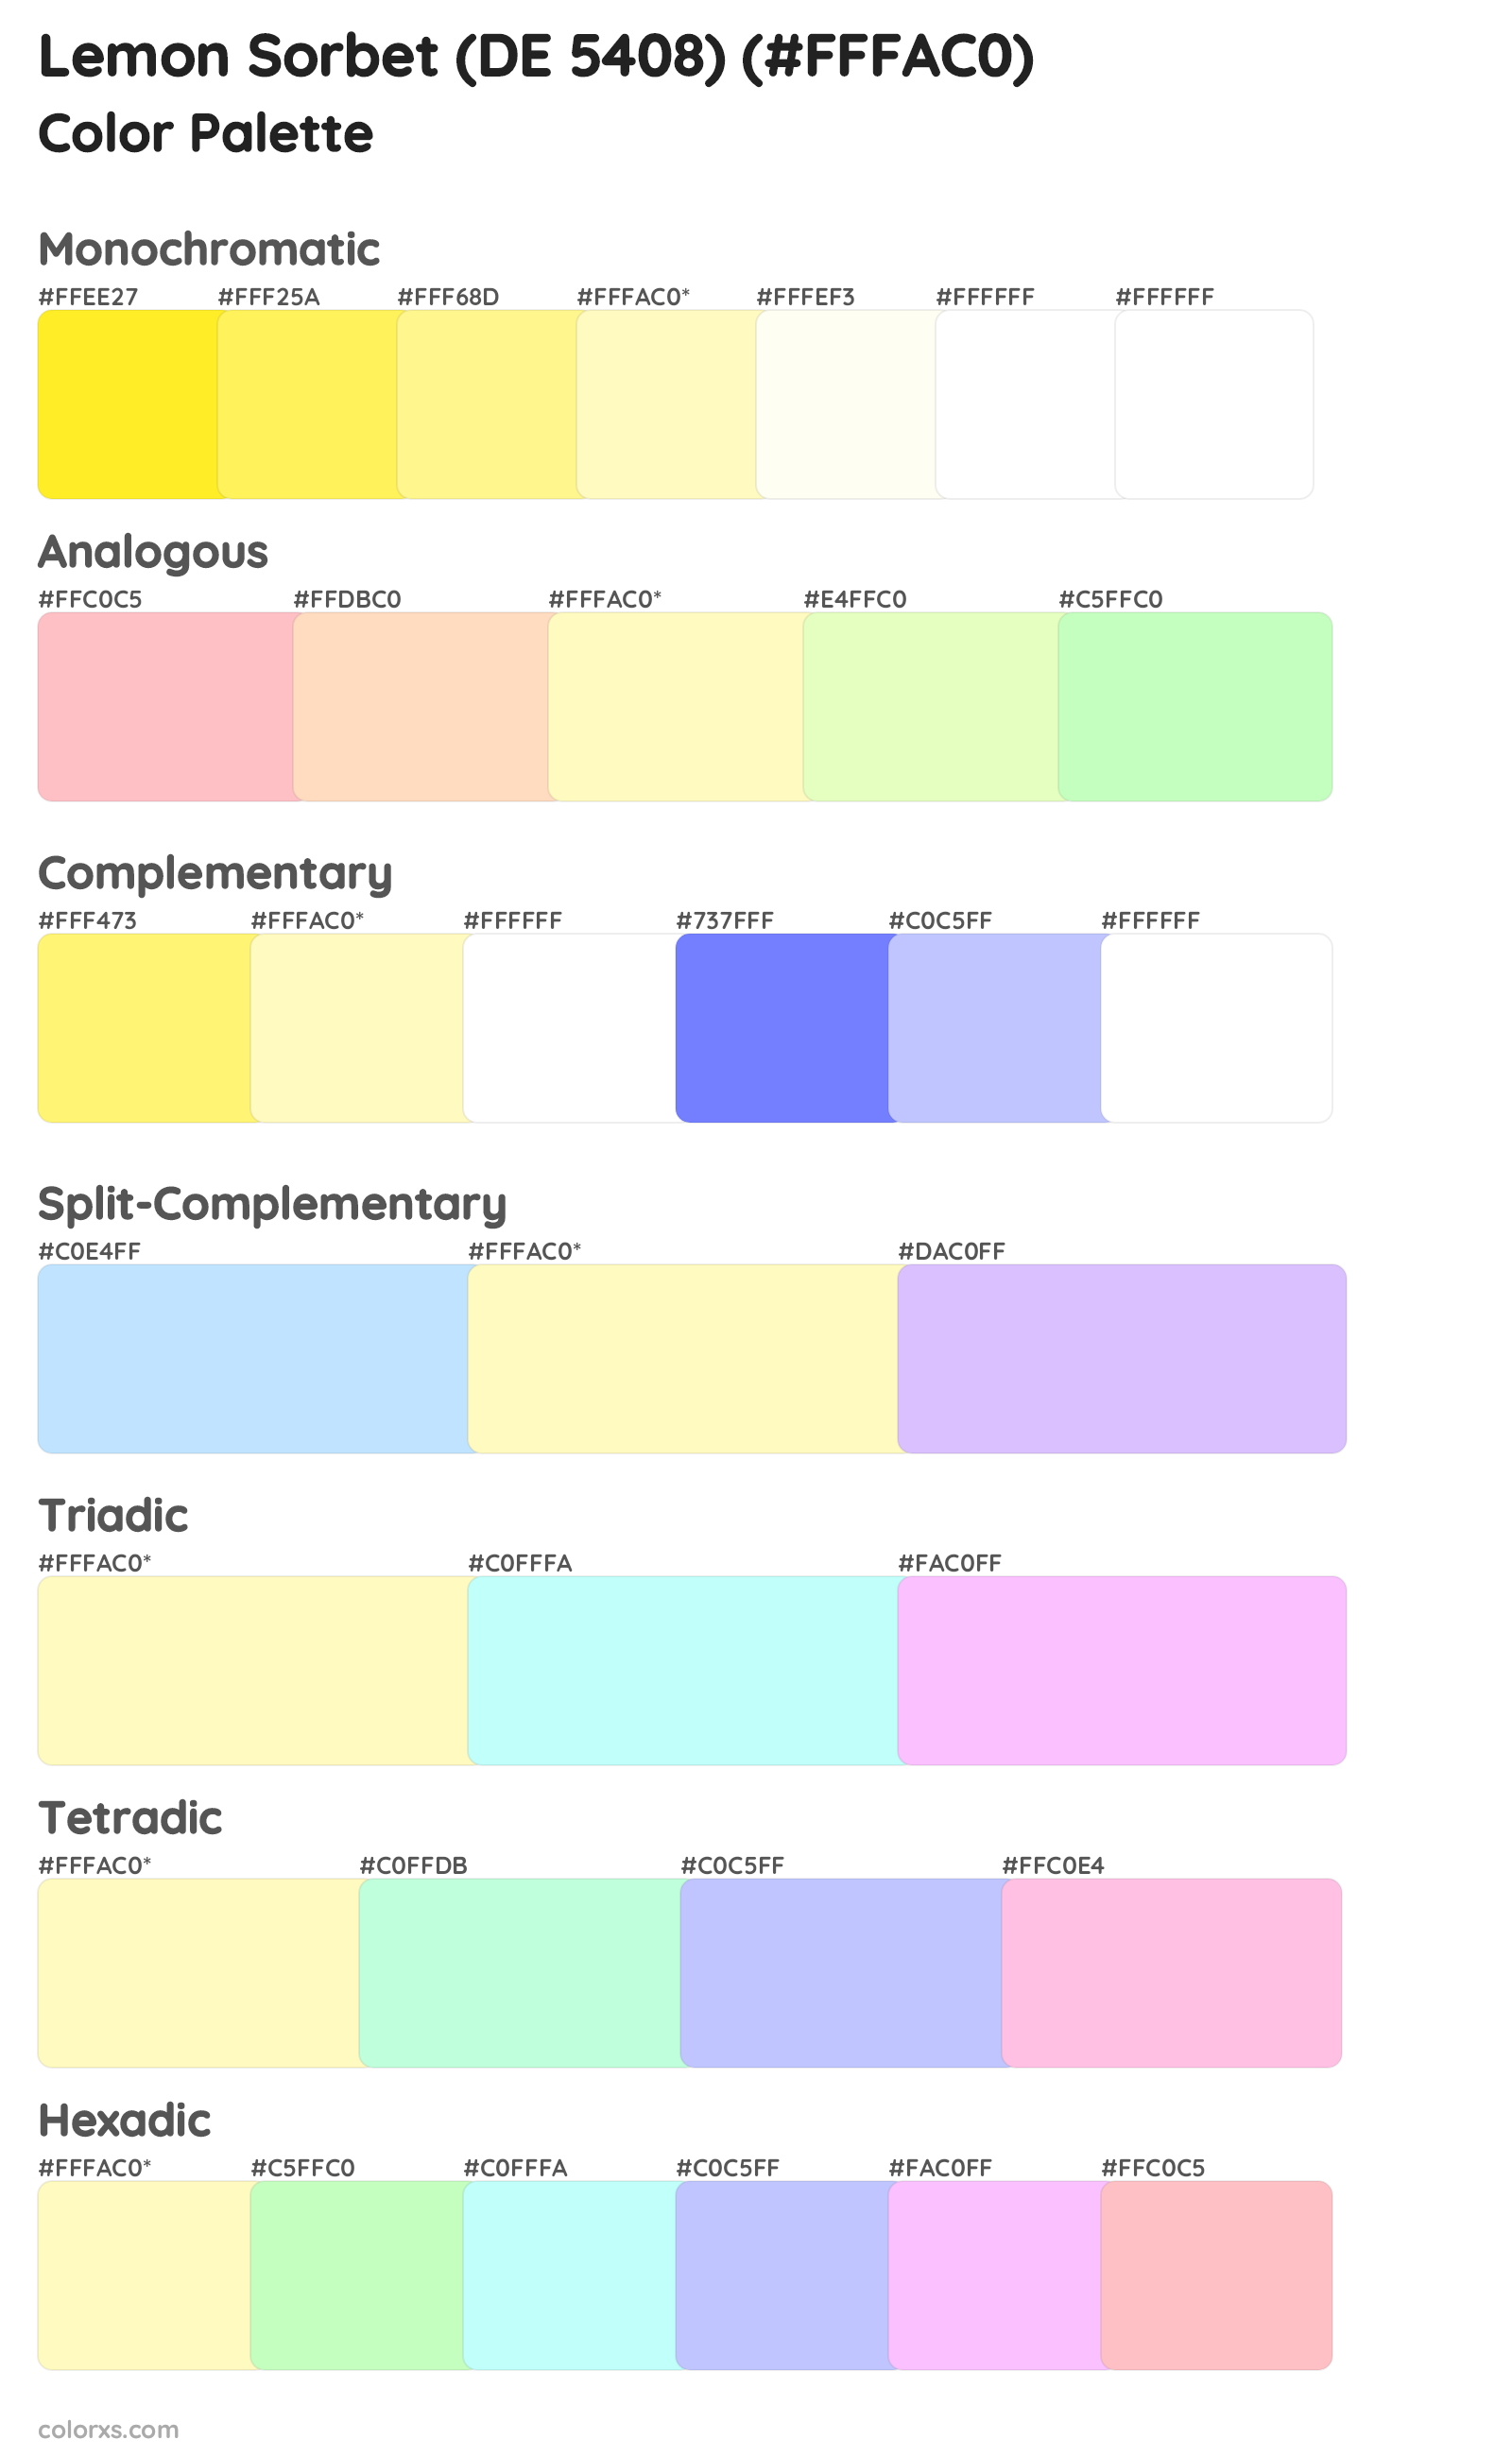 Lemon Sorbet (DE 5408) Color Scheme Palettes